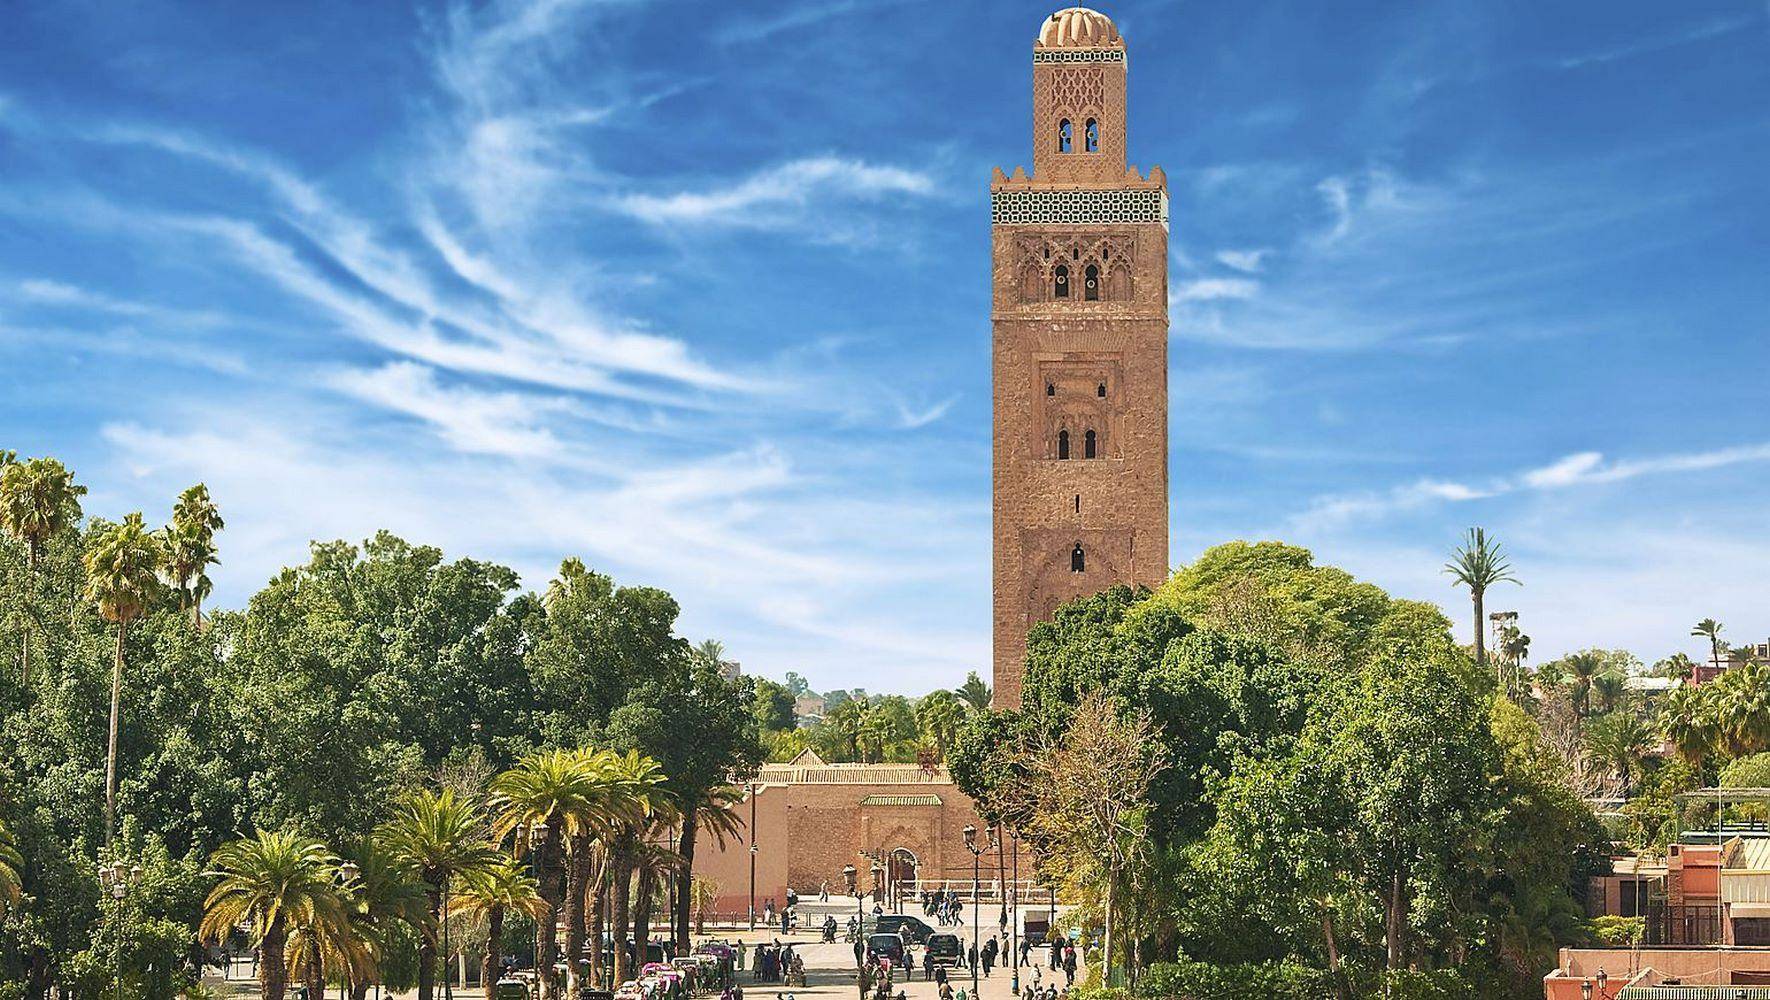 ¡Bienvenidos a Marrakech!